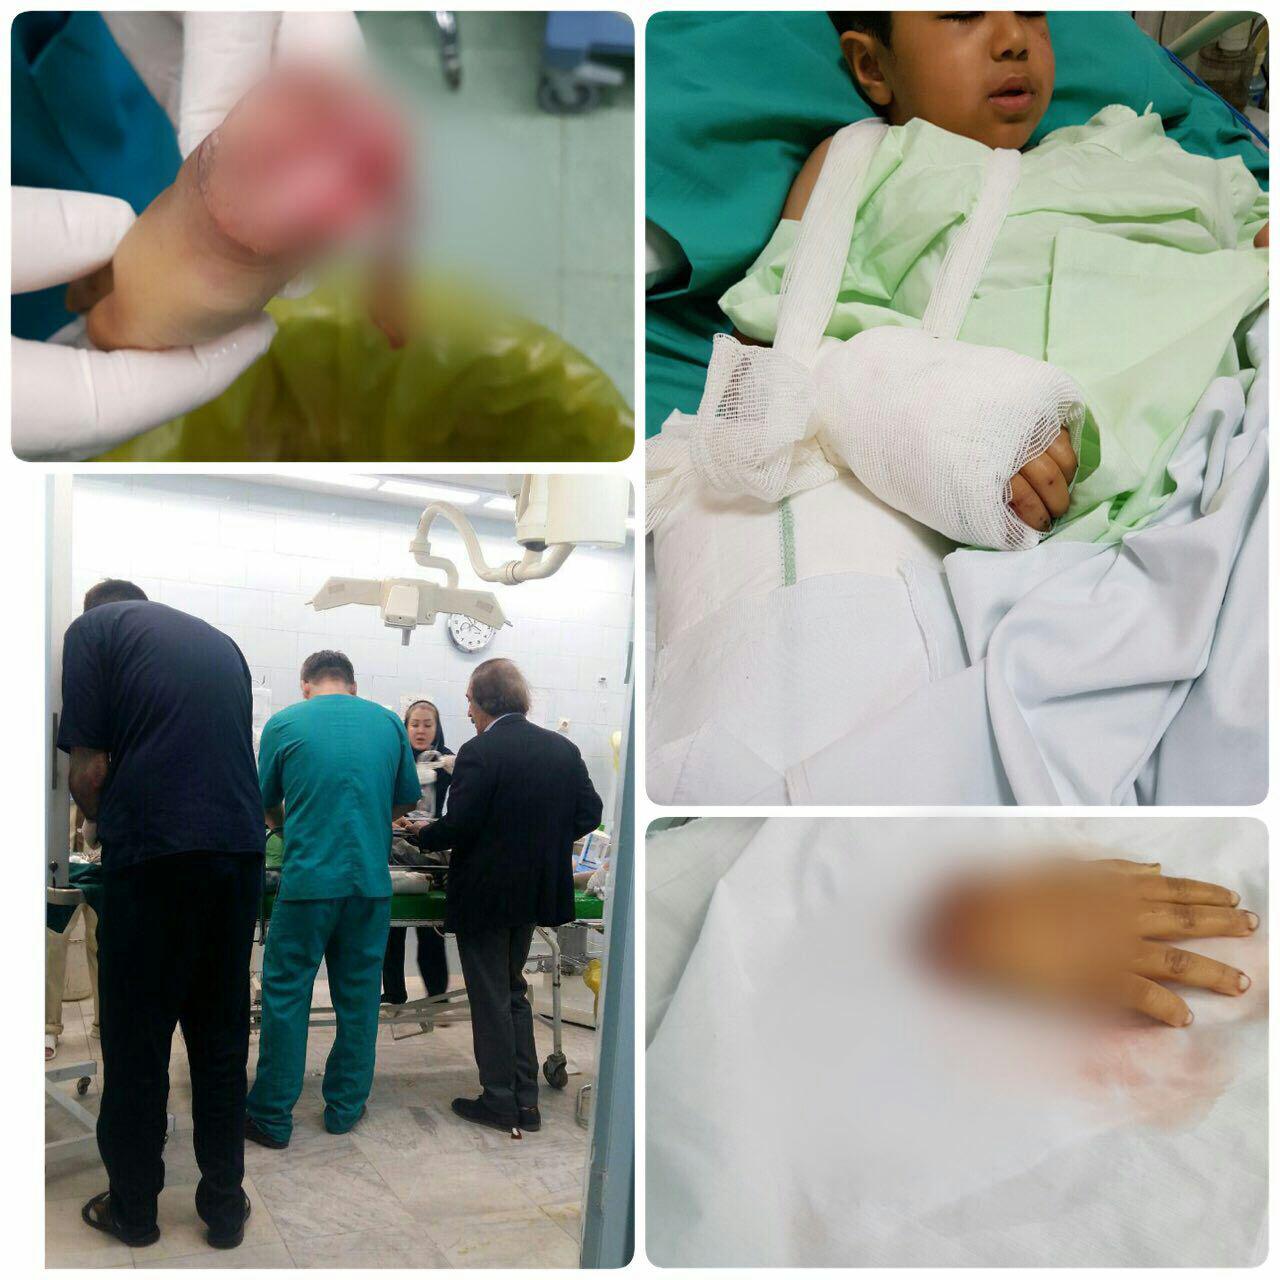 پیوند دست قطع شده کودک زلزله زده